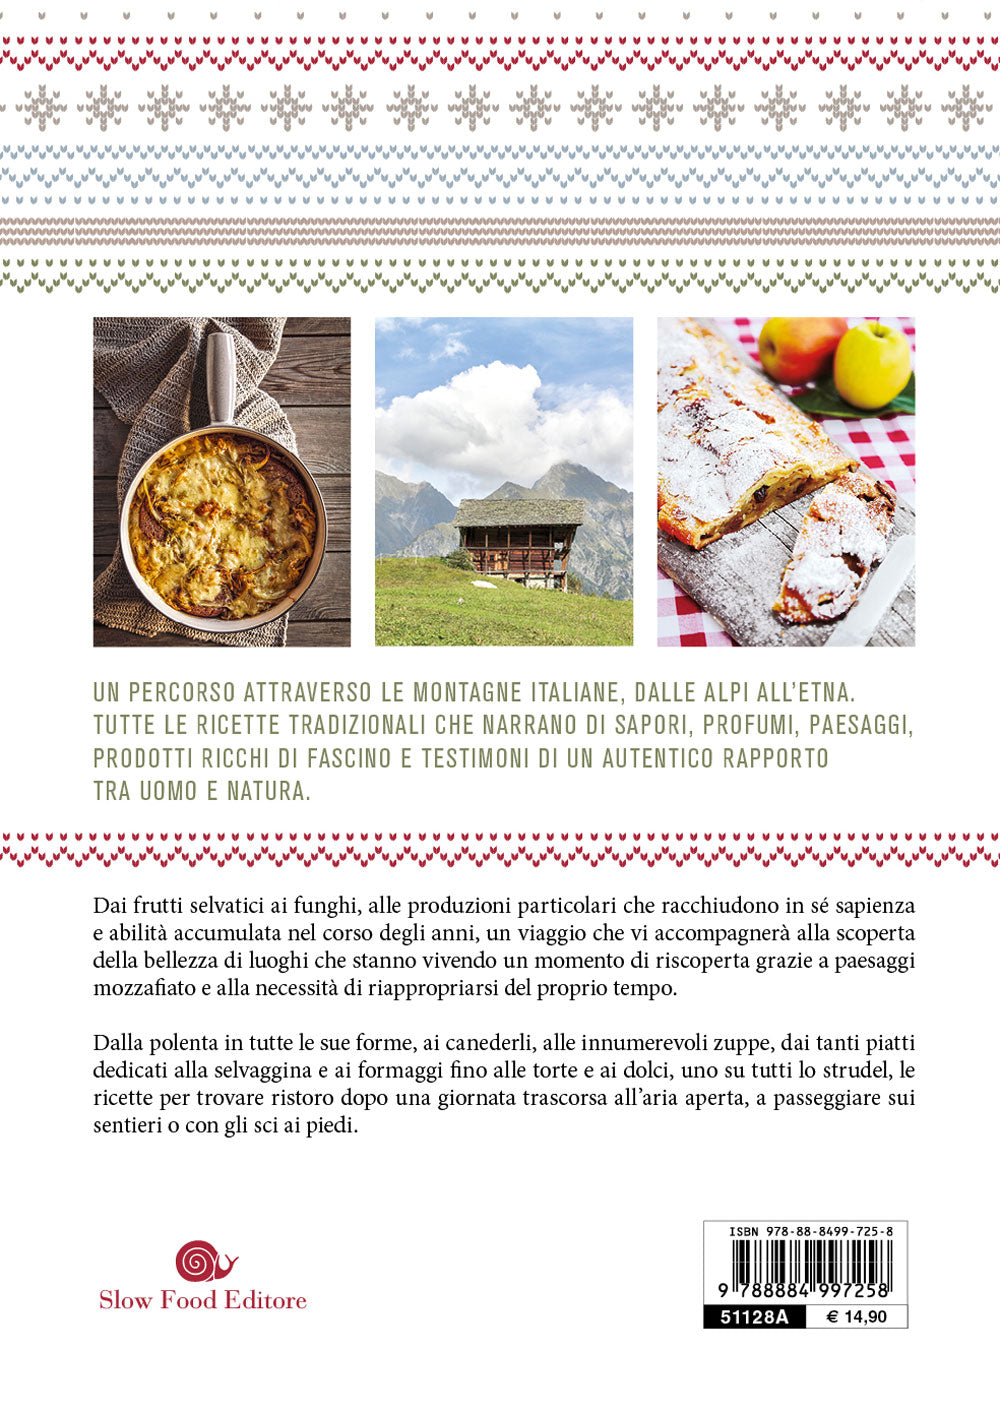 La cucina di montagna. Viaggio dal Friuli Venezia Giulia alla Sardegna attraverso paesaggi unici e cibi da scoprire